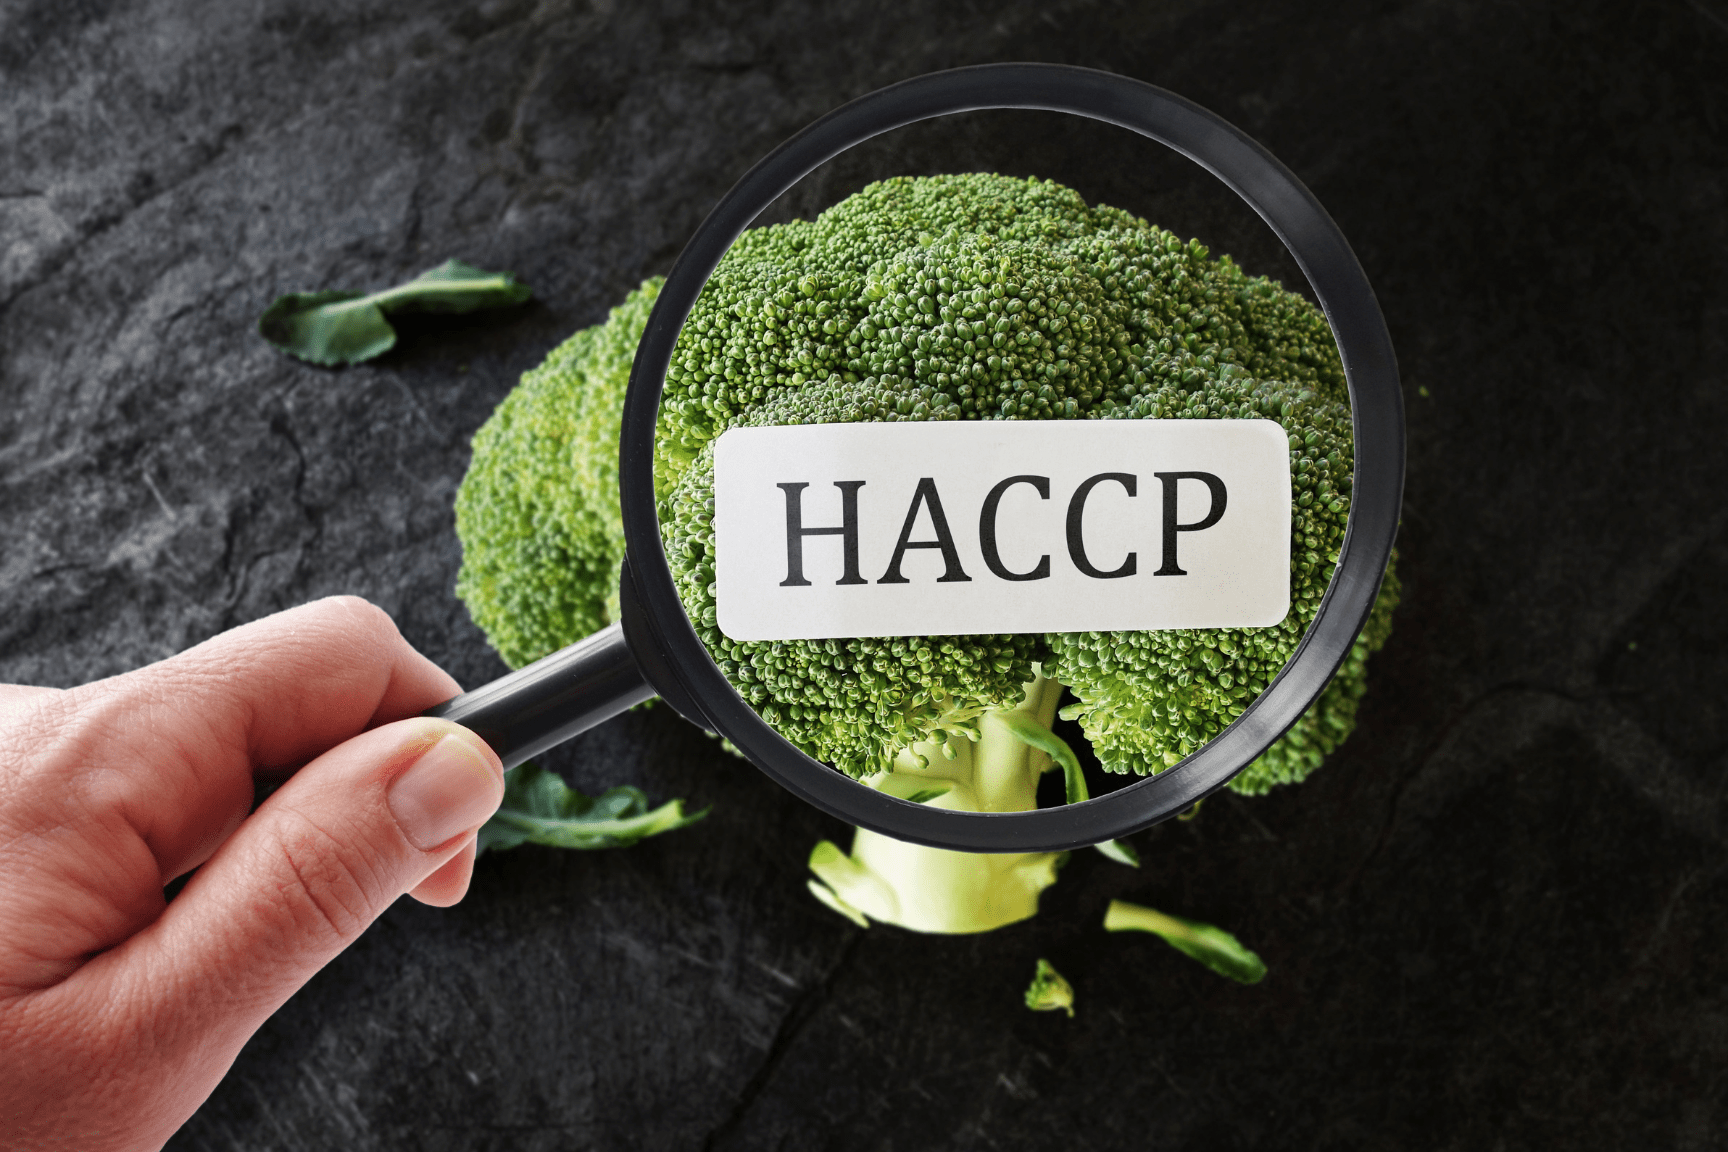 Bông cải xanh được soi bằng kính lúp có hiện chữ HACCP.